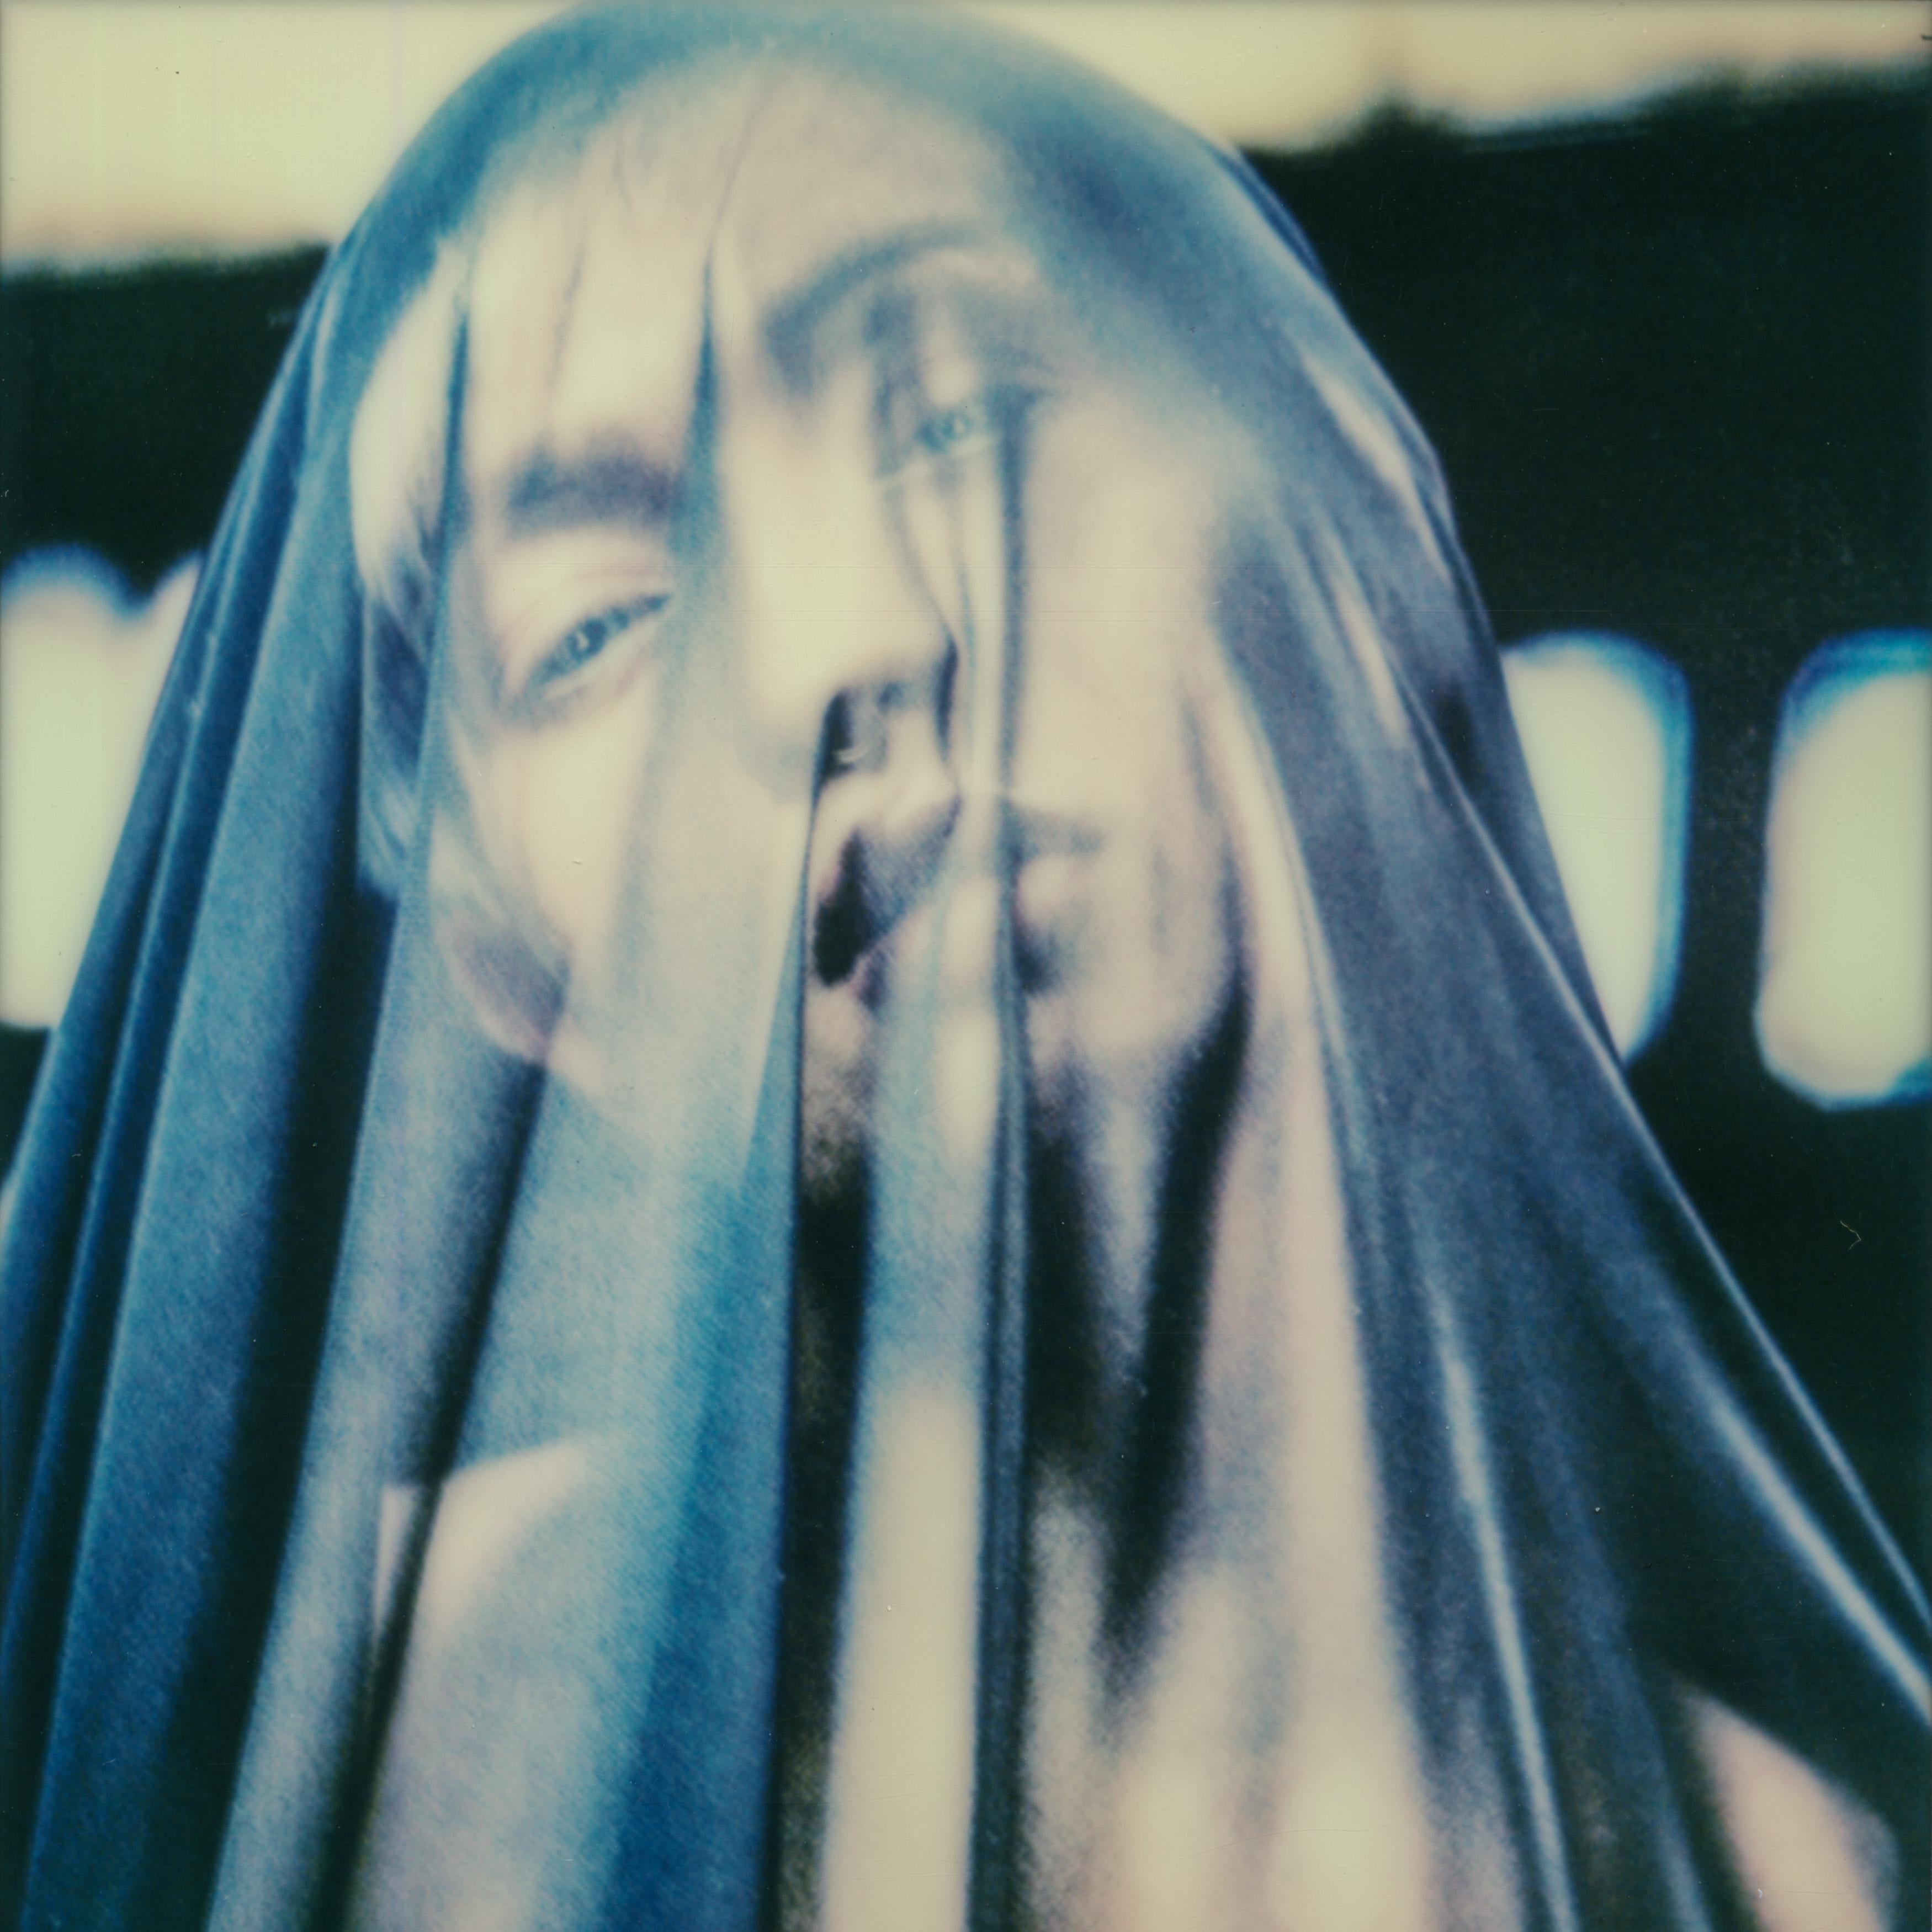 Behind the veil - Polaroid, Women, 21st Century, Nude